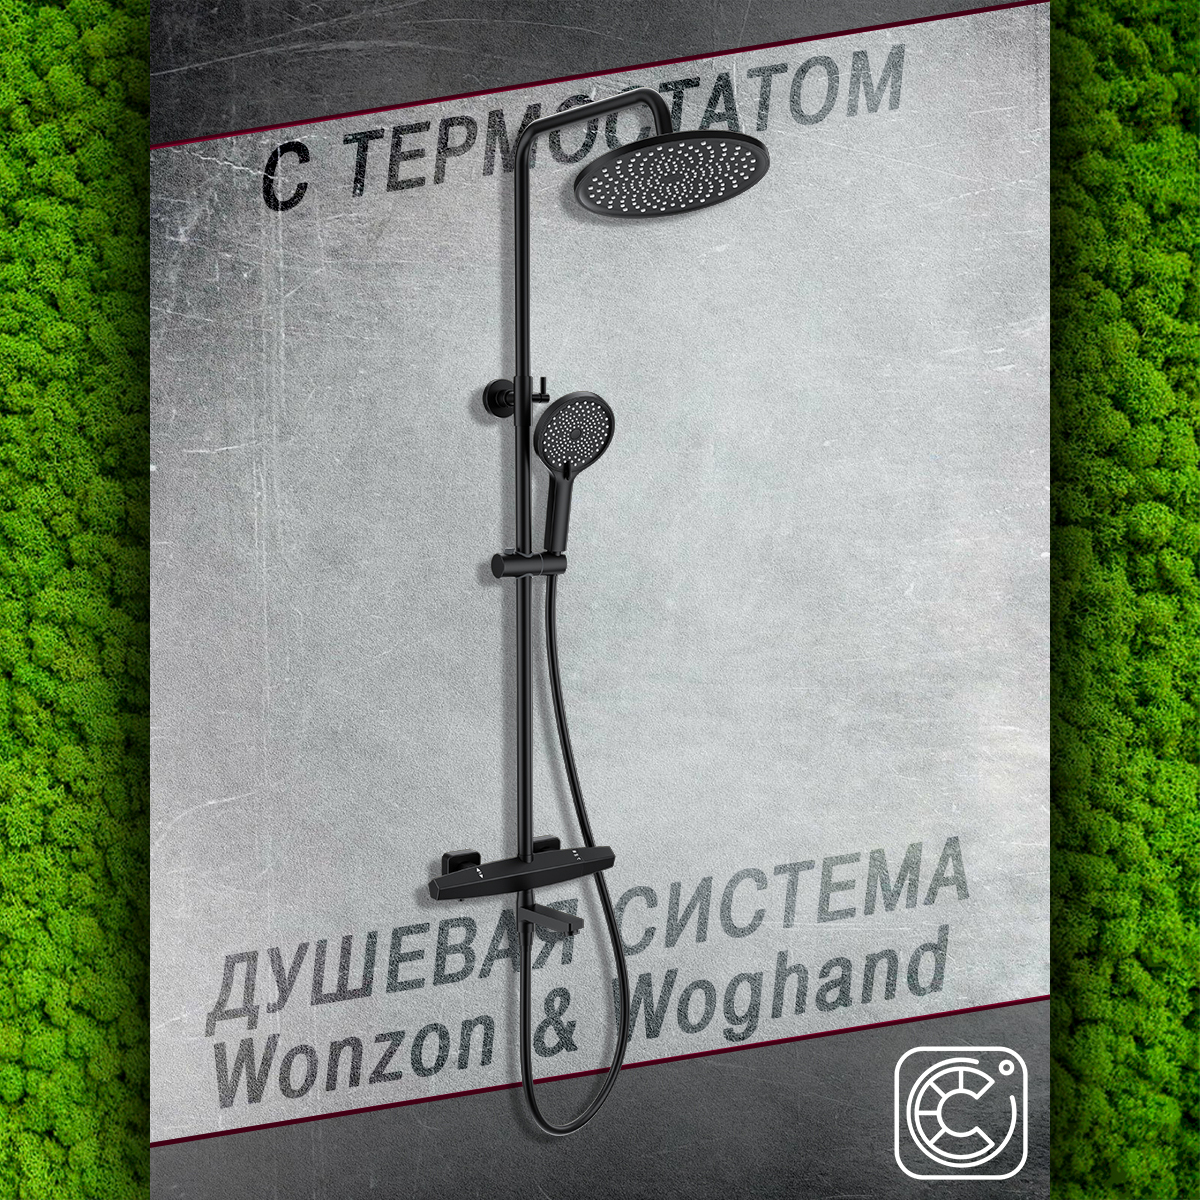 Душевой гарнитур с термостатом WONZON&WOGHAND WW-B3046-A1-MB